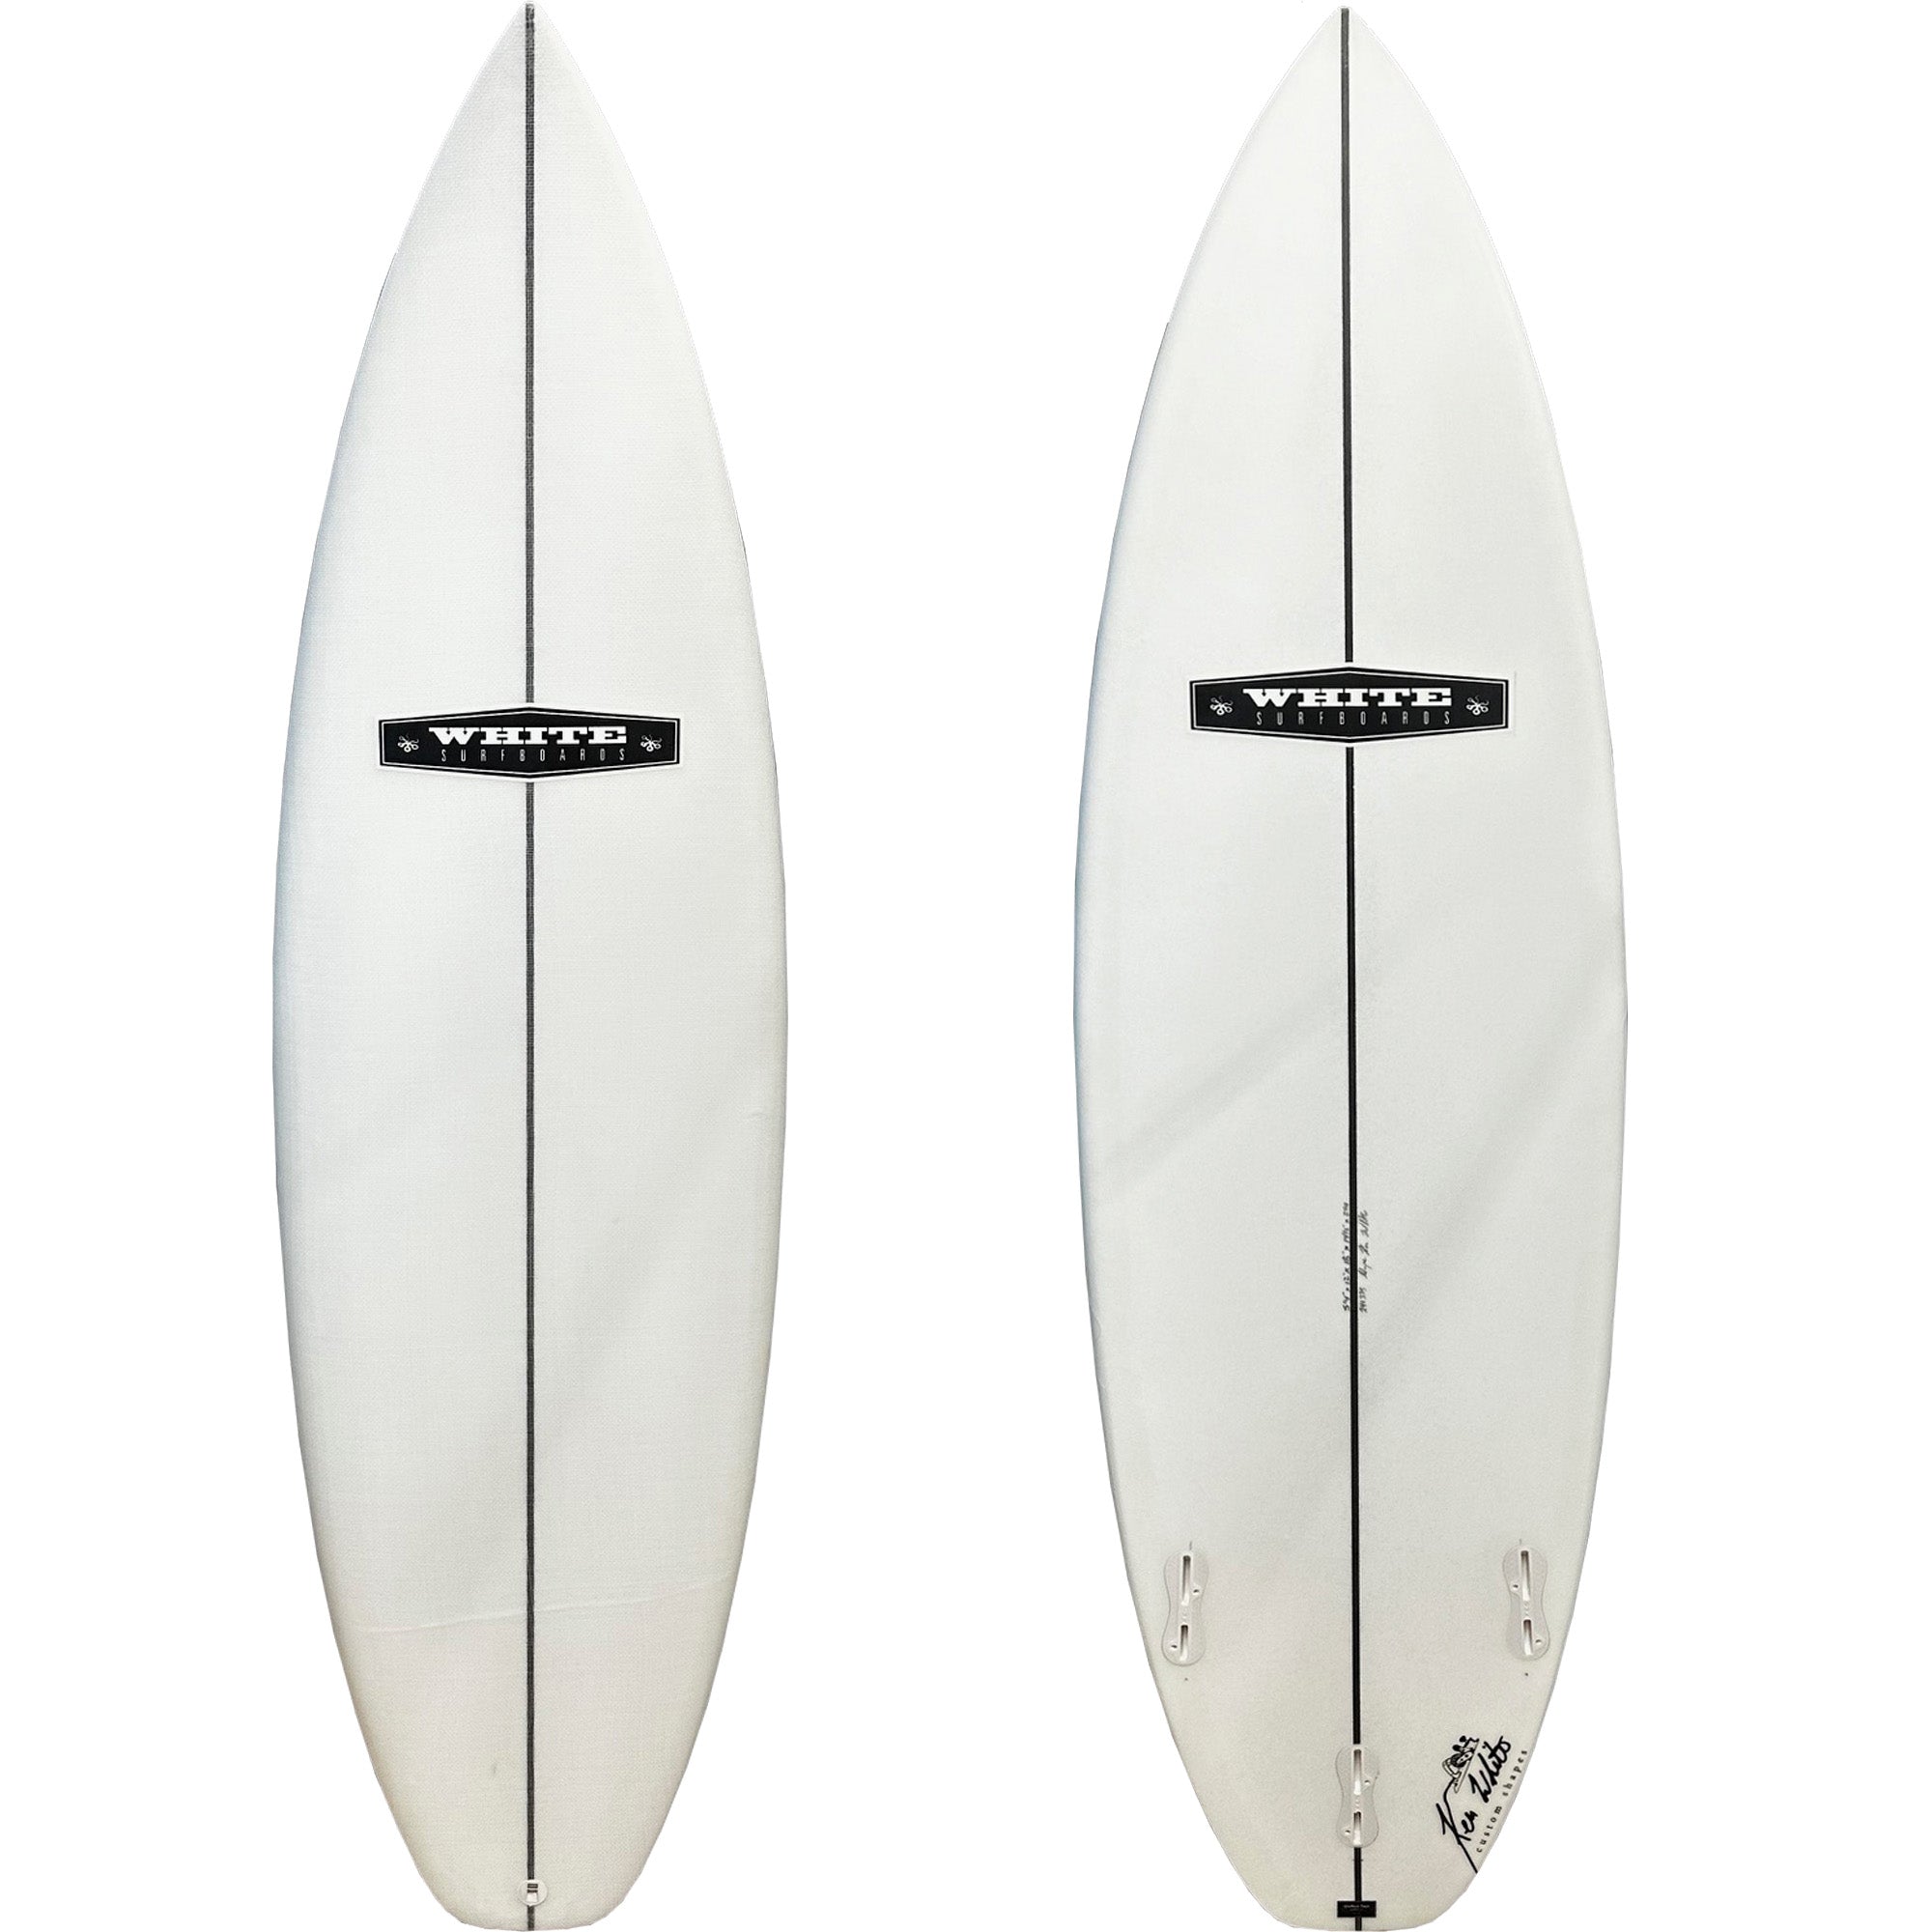 Ken White Dance Party EPS 5'8 Surfboard - FCS II